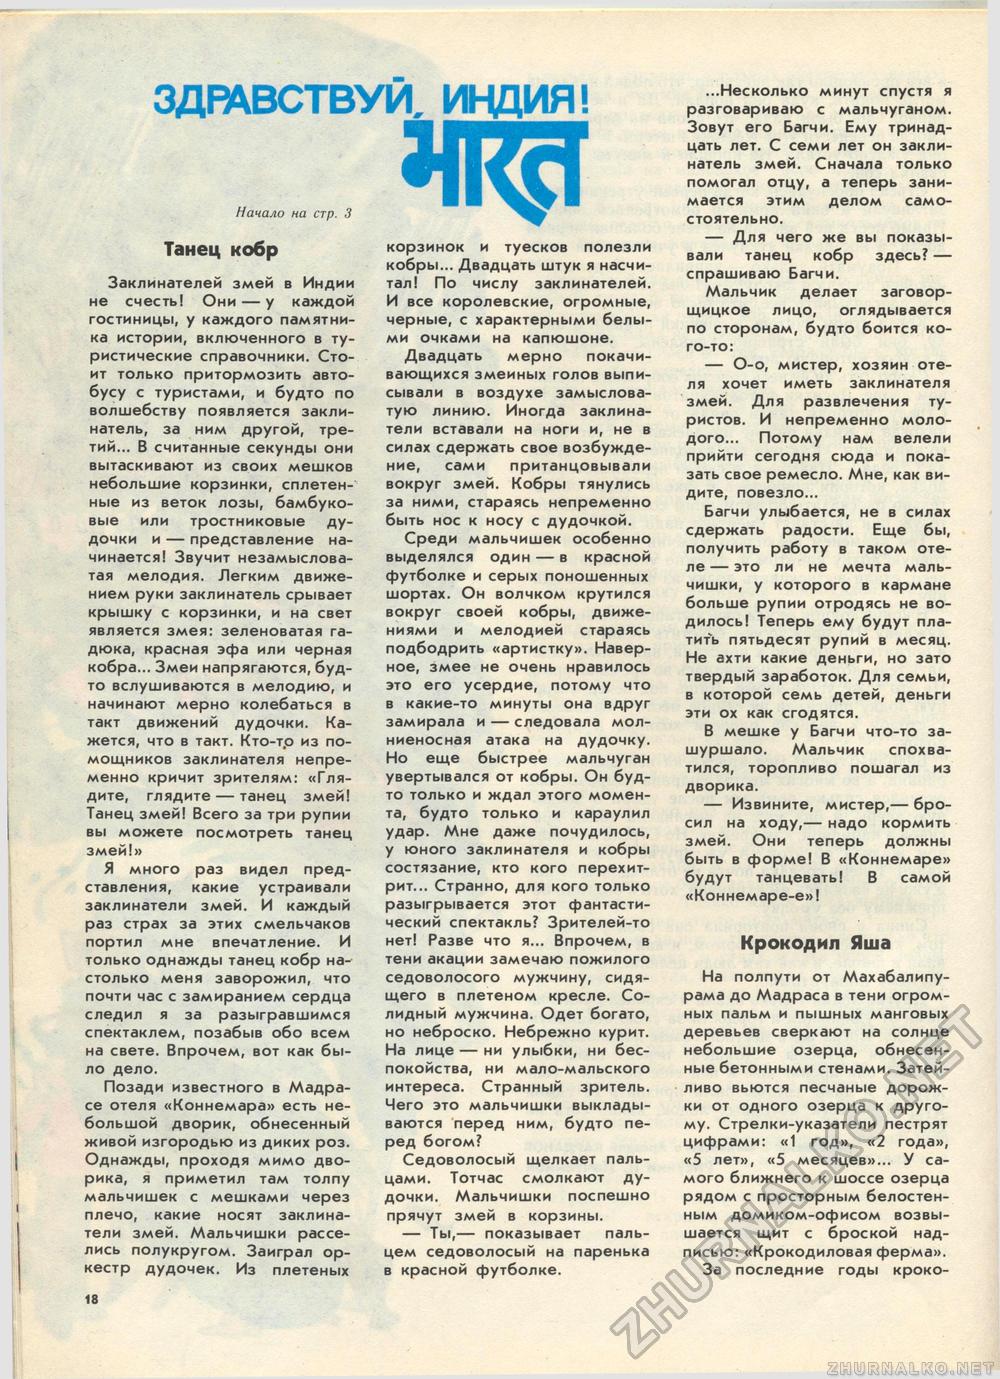  1985-12,  23